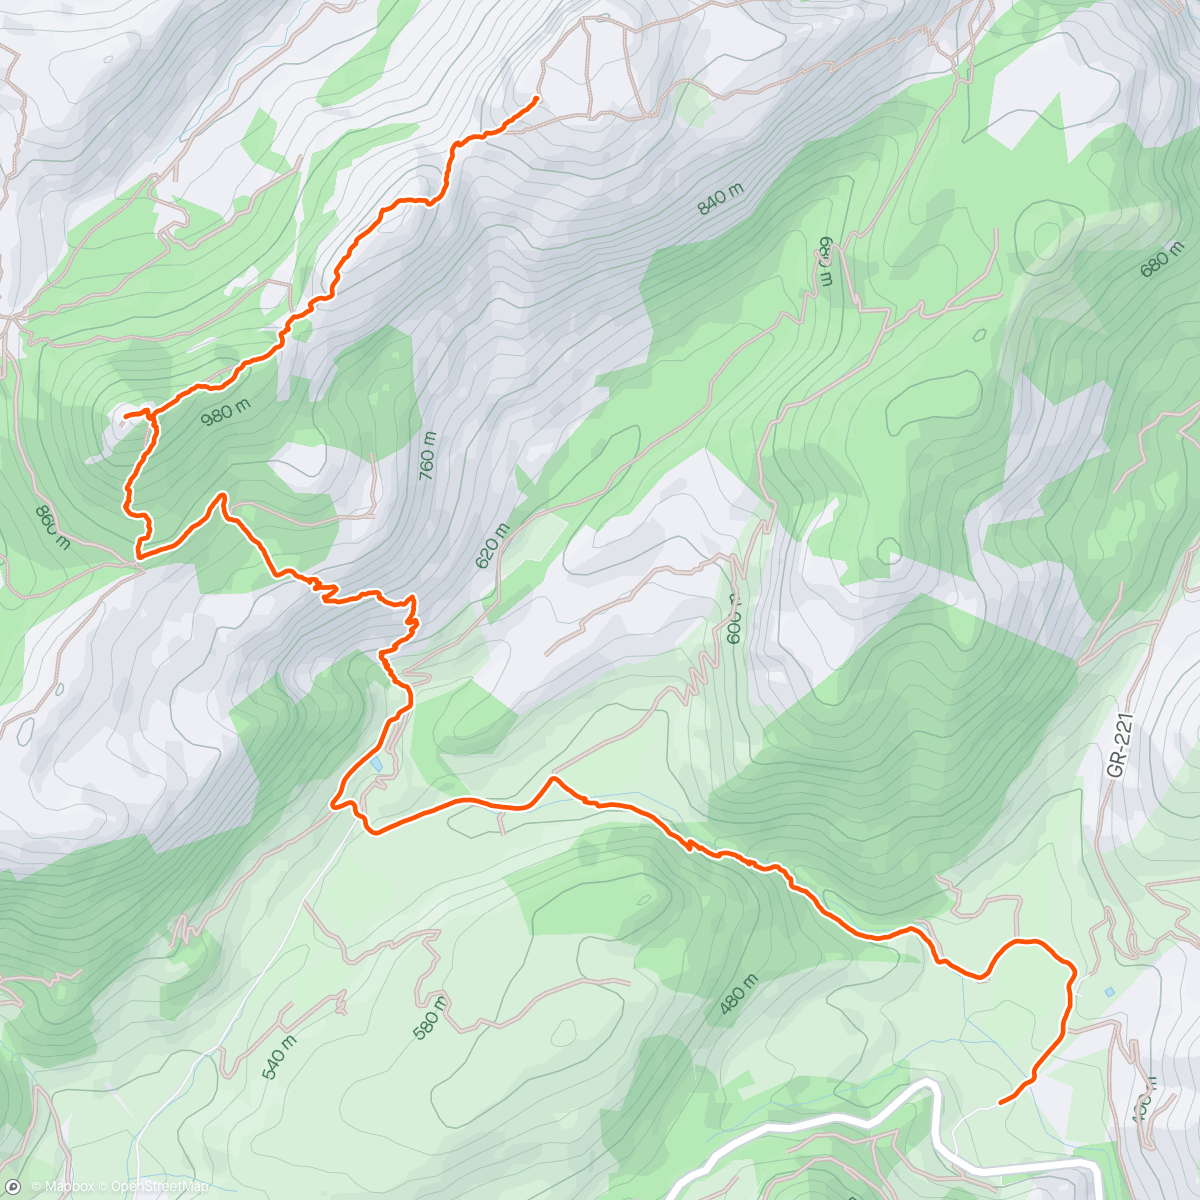 「5H 16kms Trail Kilian Jornet」活動的地圖